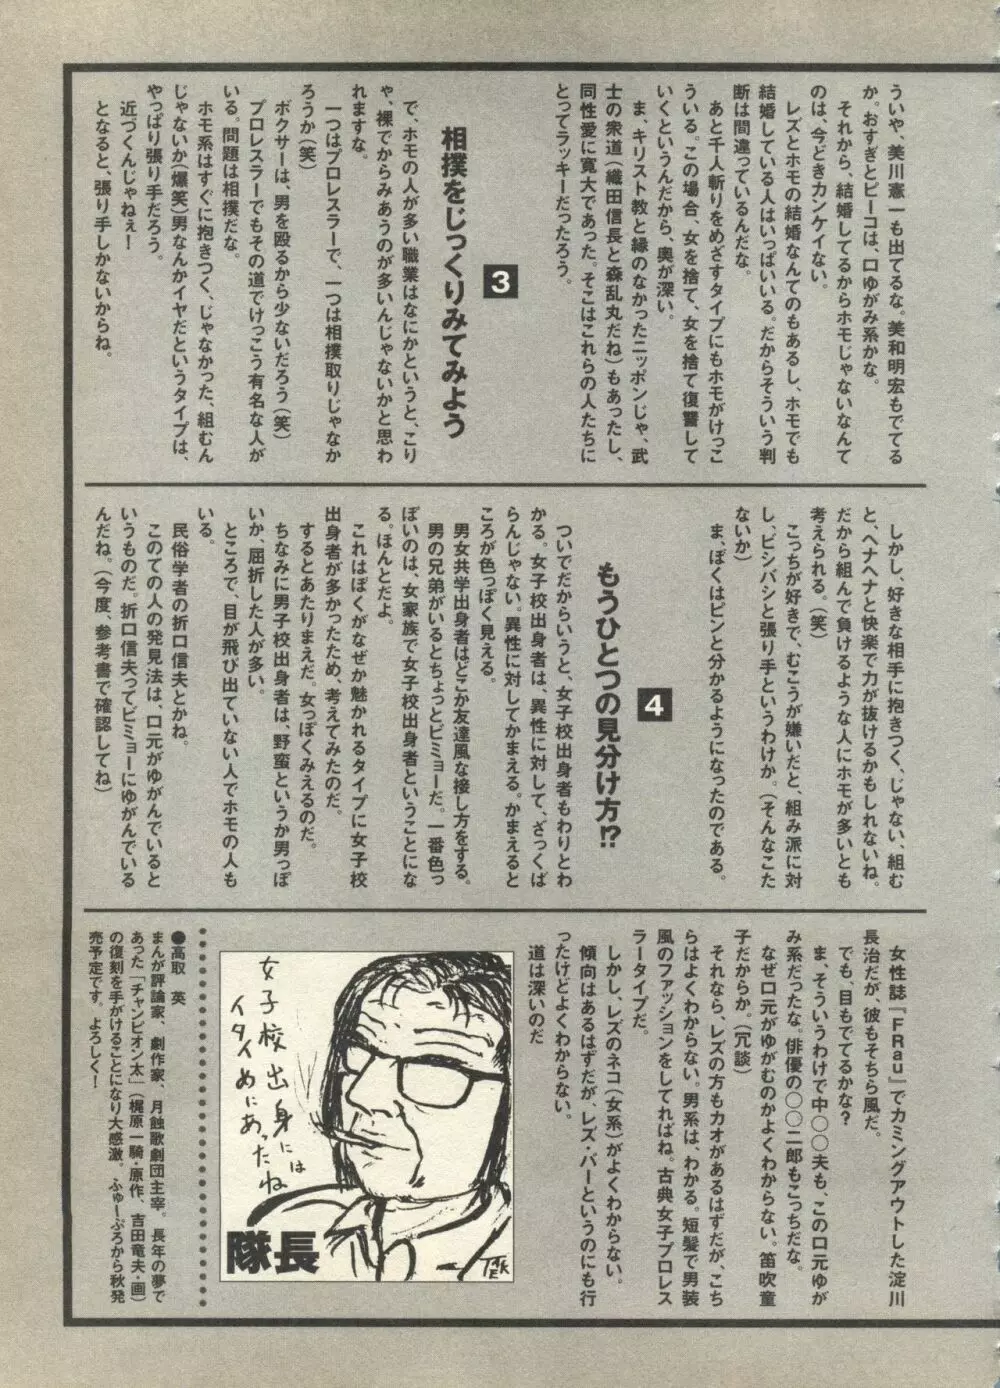 パイク Pai.kuu 1997 Dec 七 195ページ